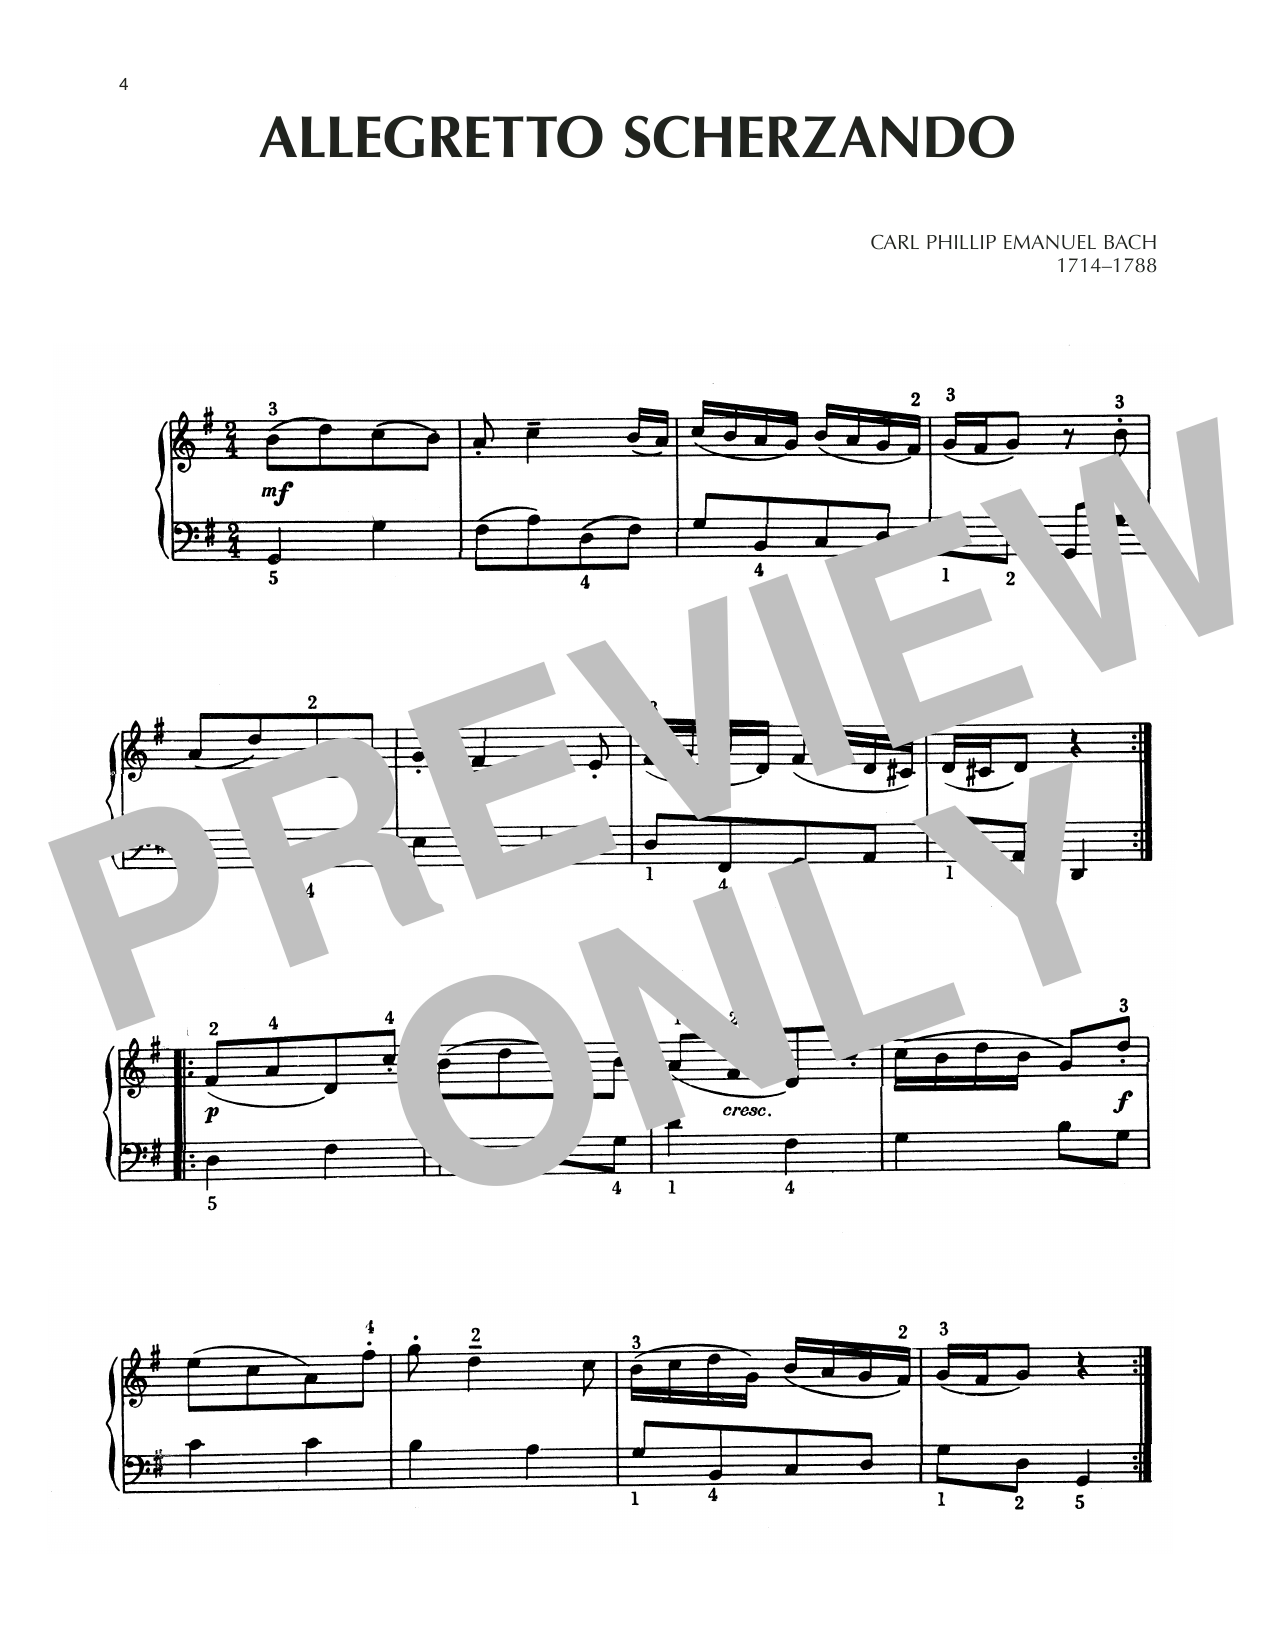 Download Carl Philipp Emanuel Bach Allegretto Scherzando Sheet Music and learn how to play Piano Solo PDF digital score in minutes